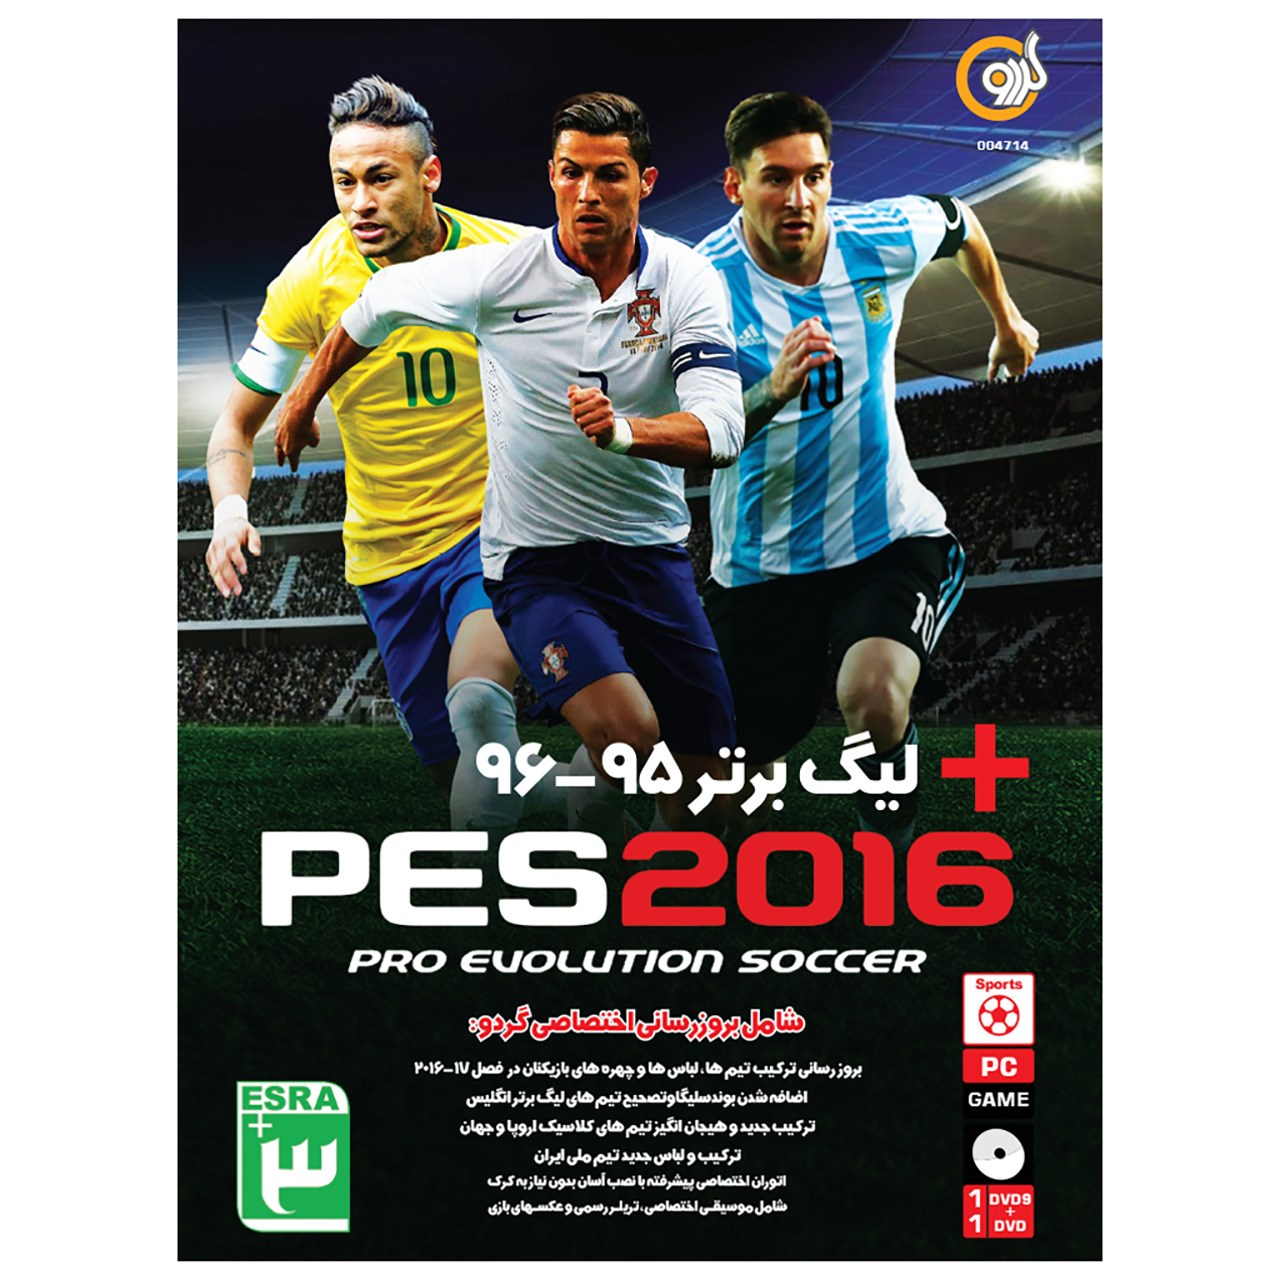 بازی PES 2016 95-96 مخصوص PC